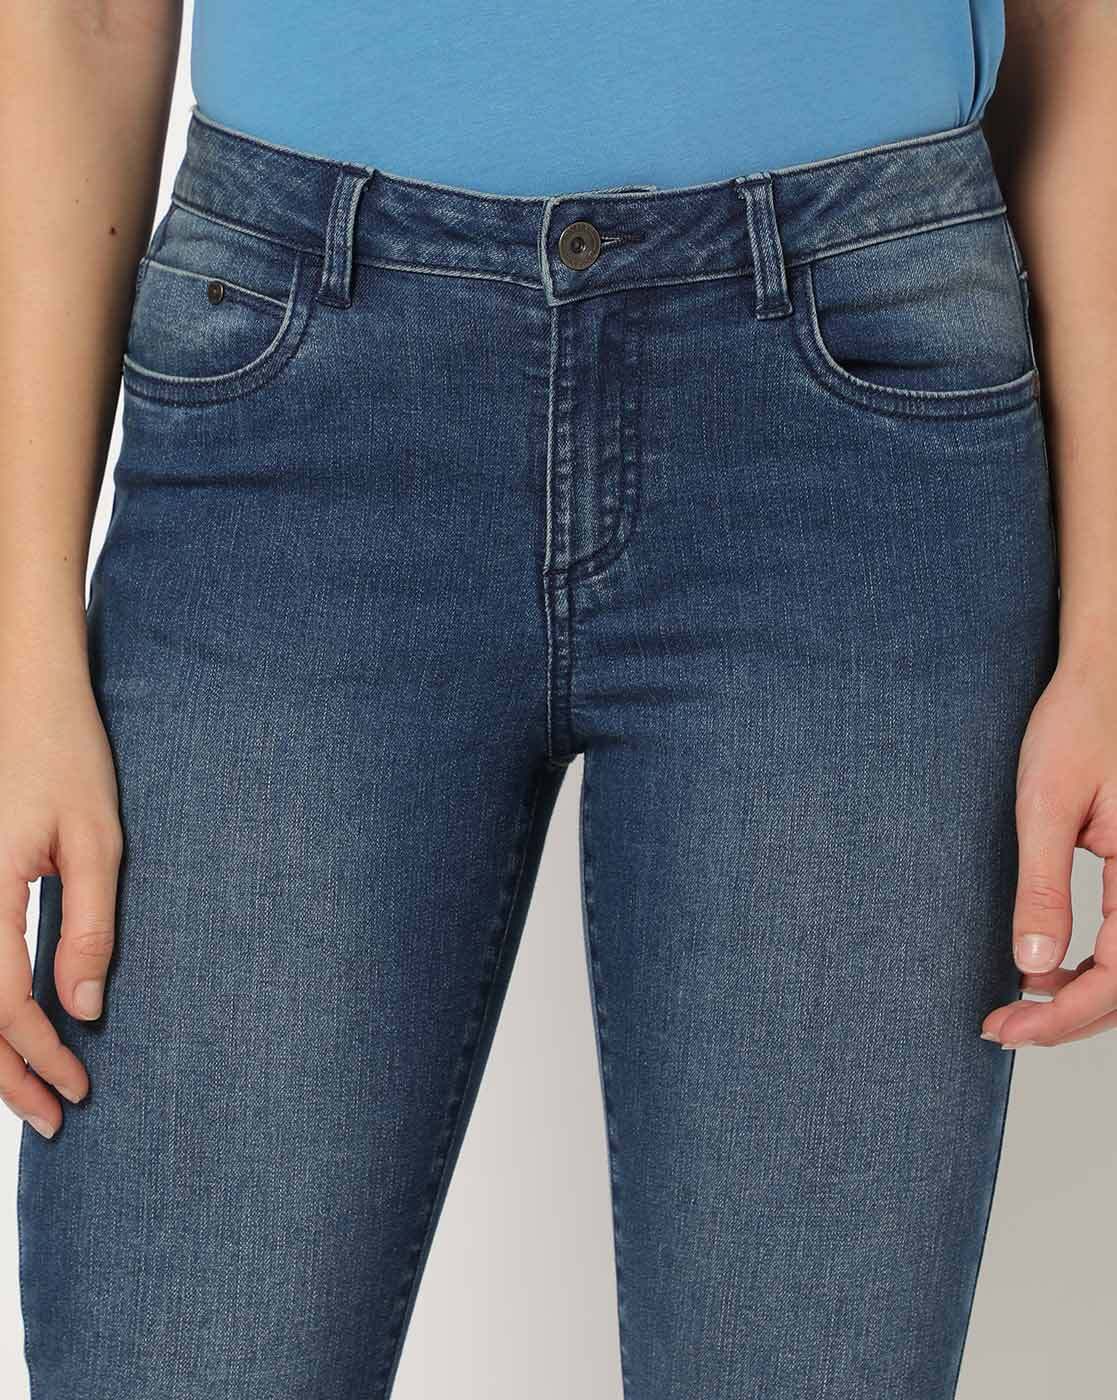 Women Jeans Below 500 - Buy Women Jeans Below 500 online in India